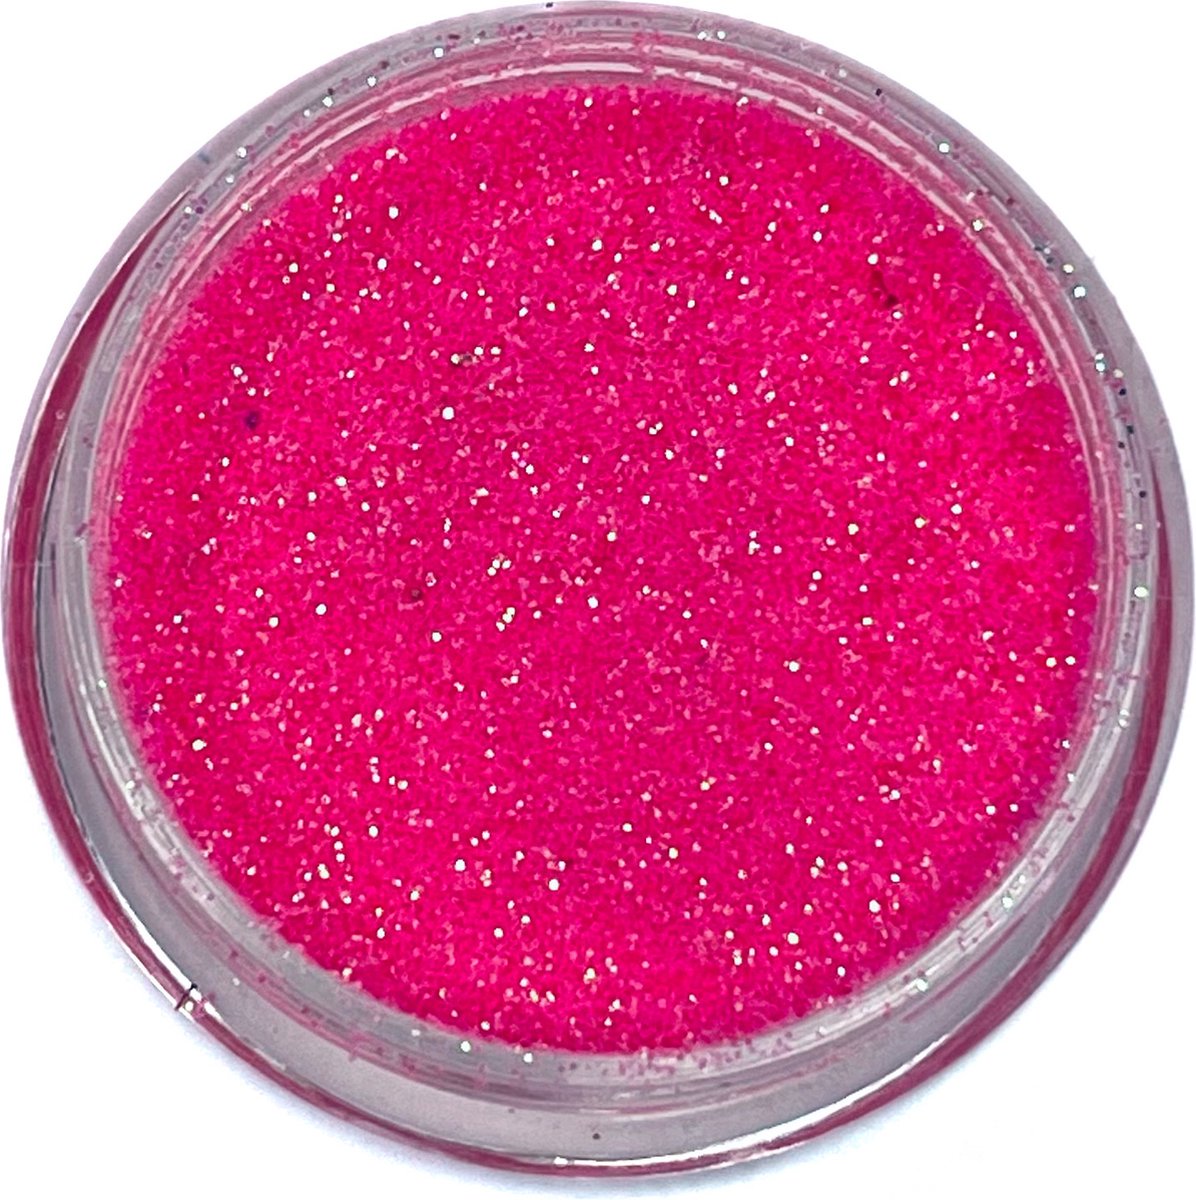 Roena's Beauty- Glitter Powder- Fancy Pink